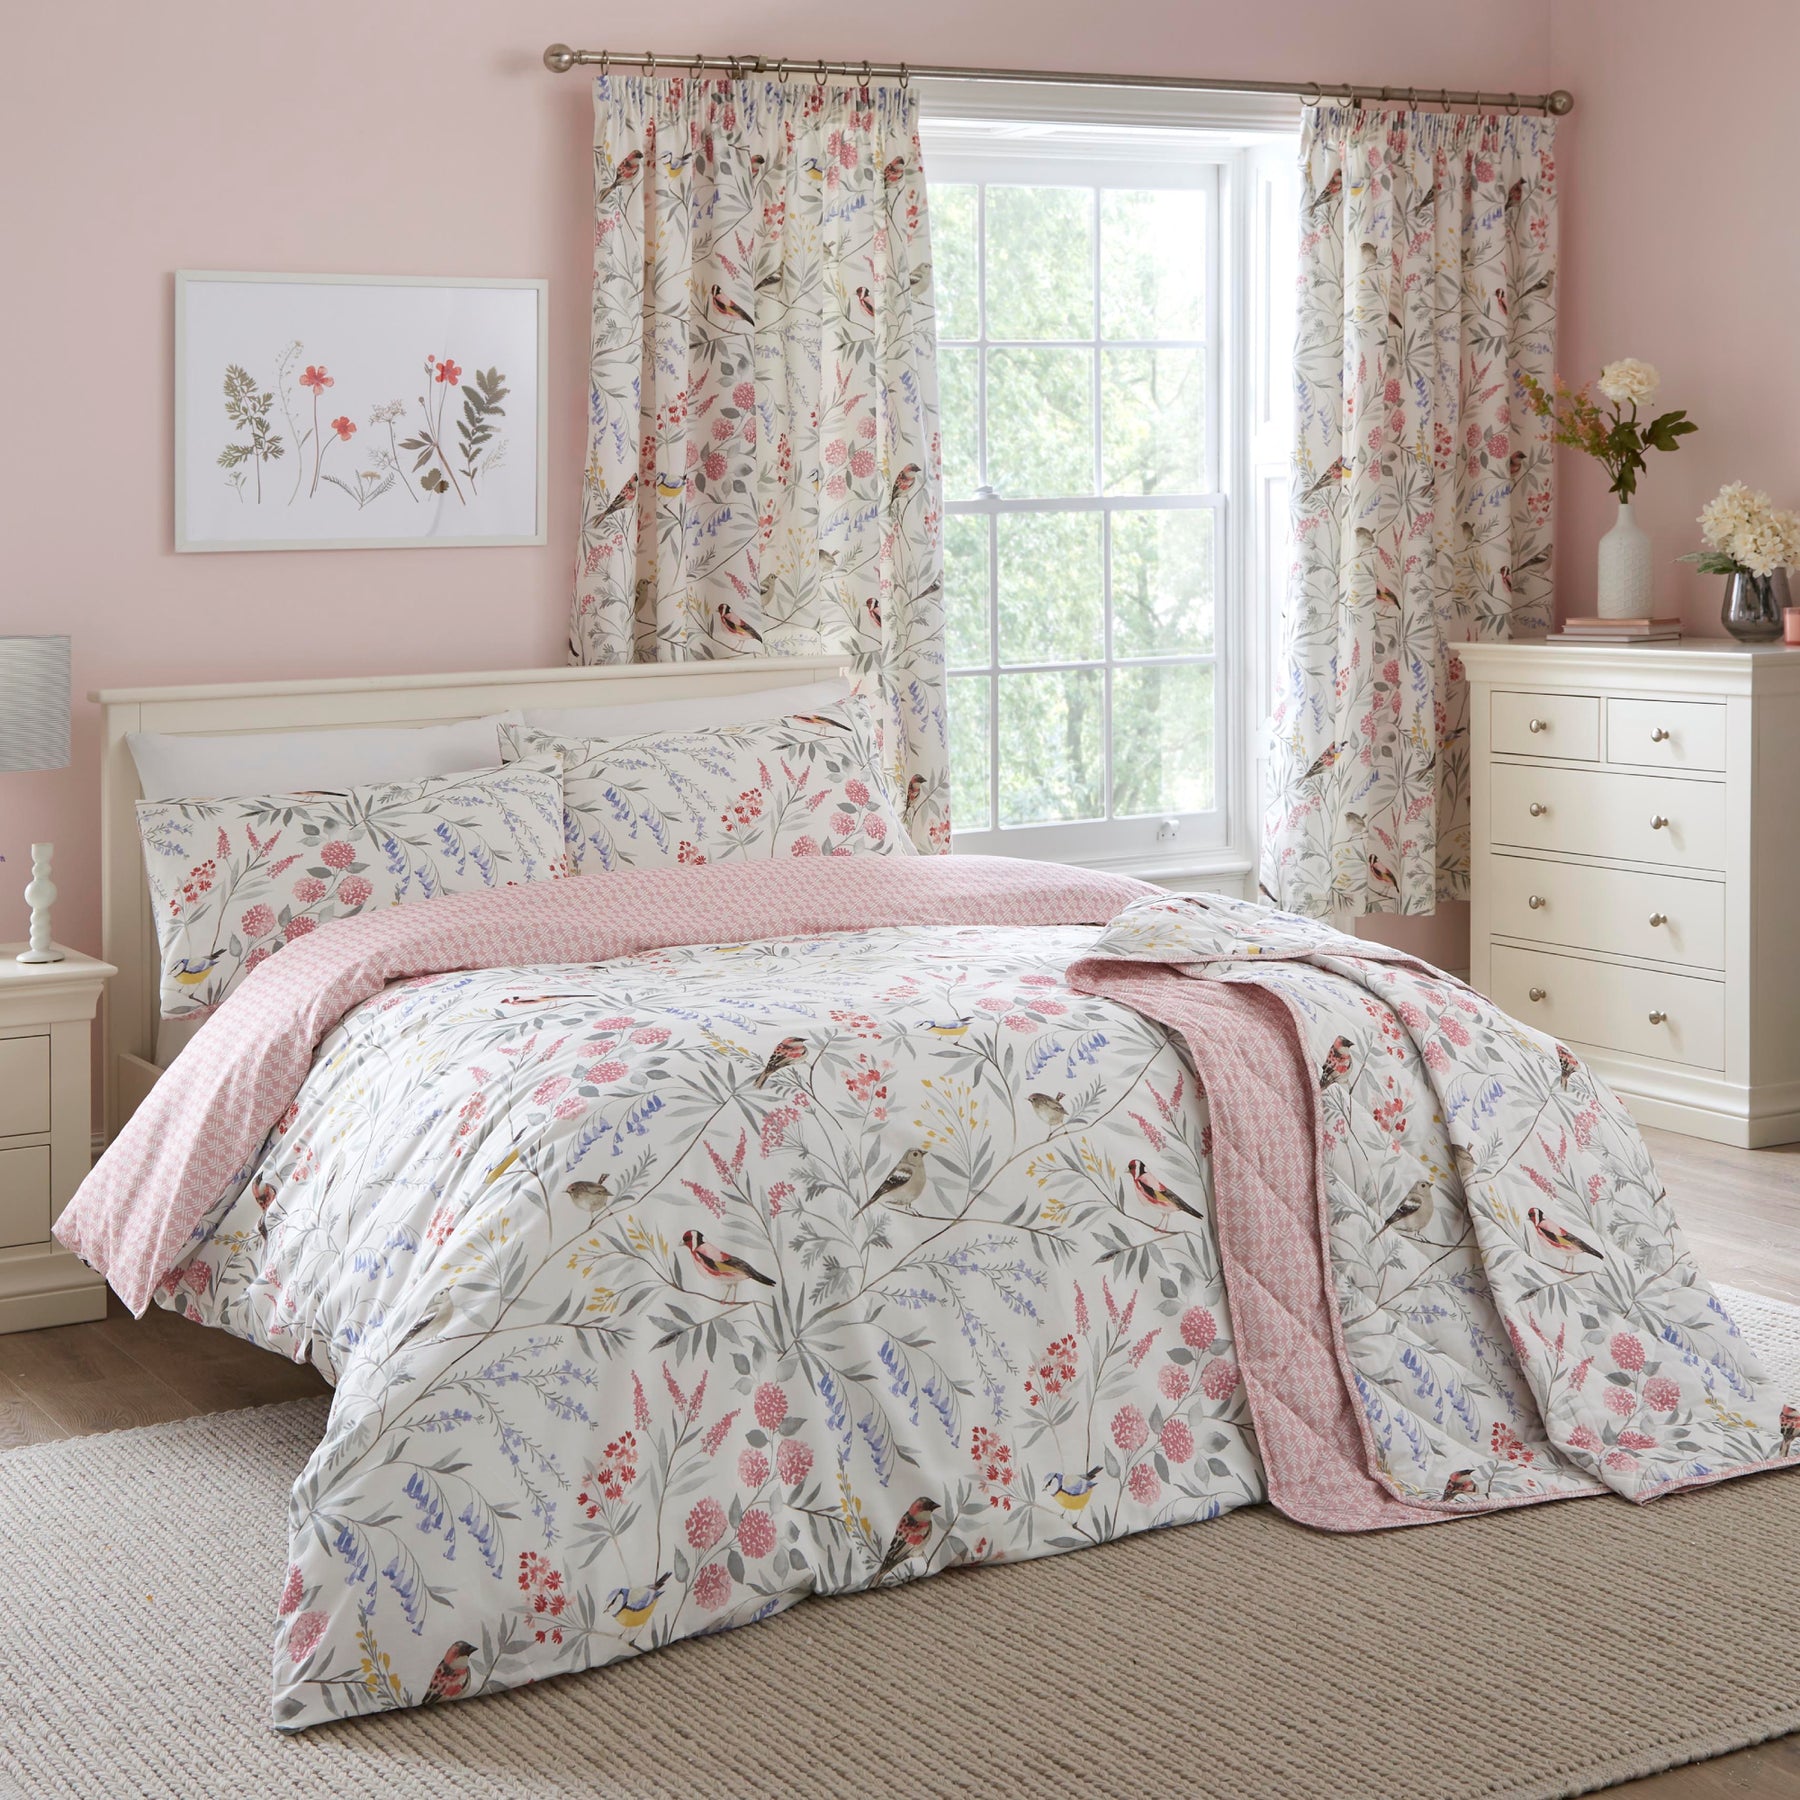 Caraway Bedspread 200cm x 230cm Pink